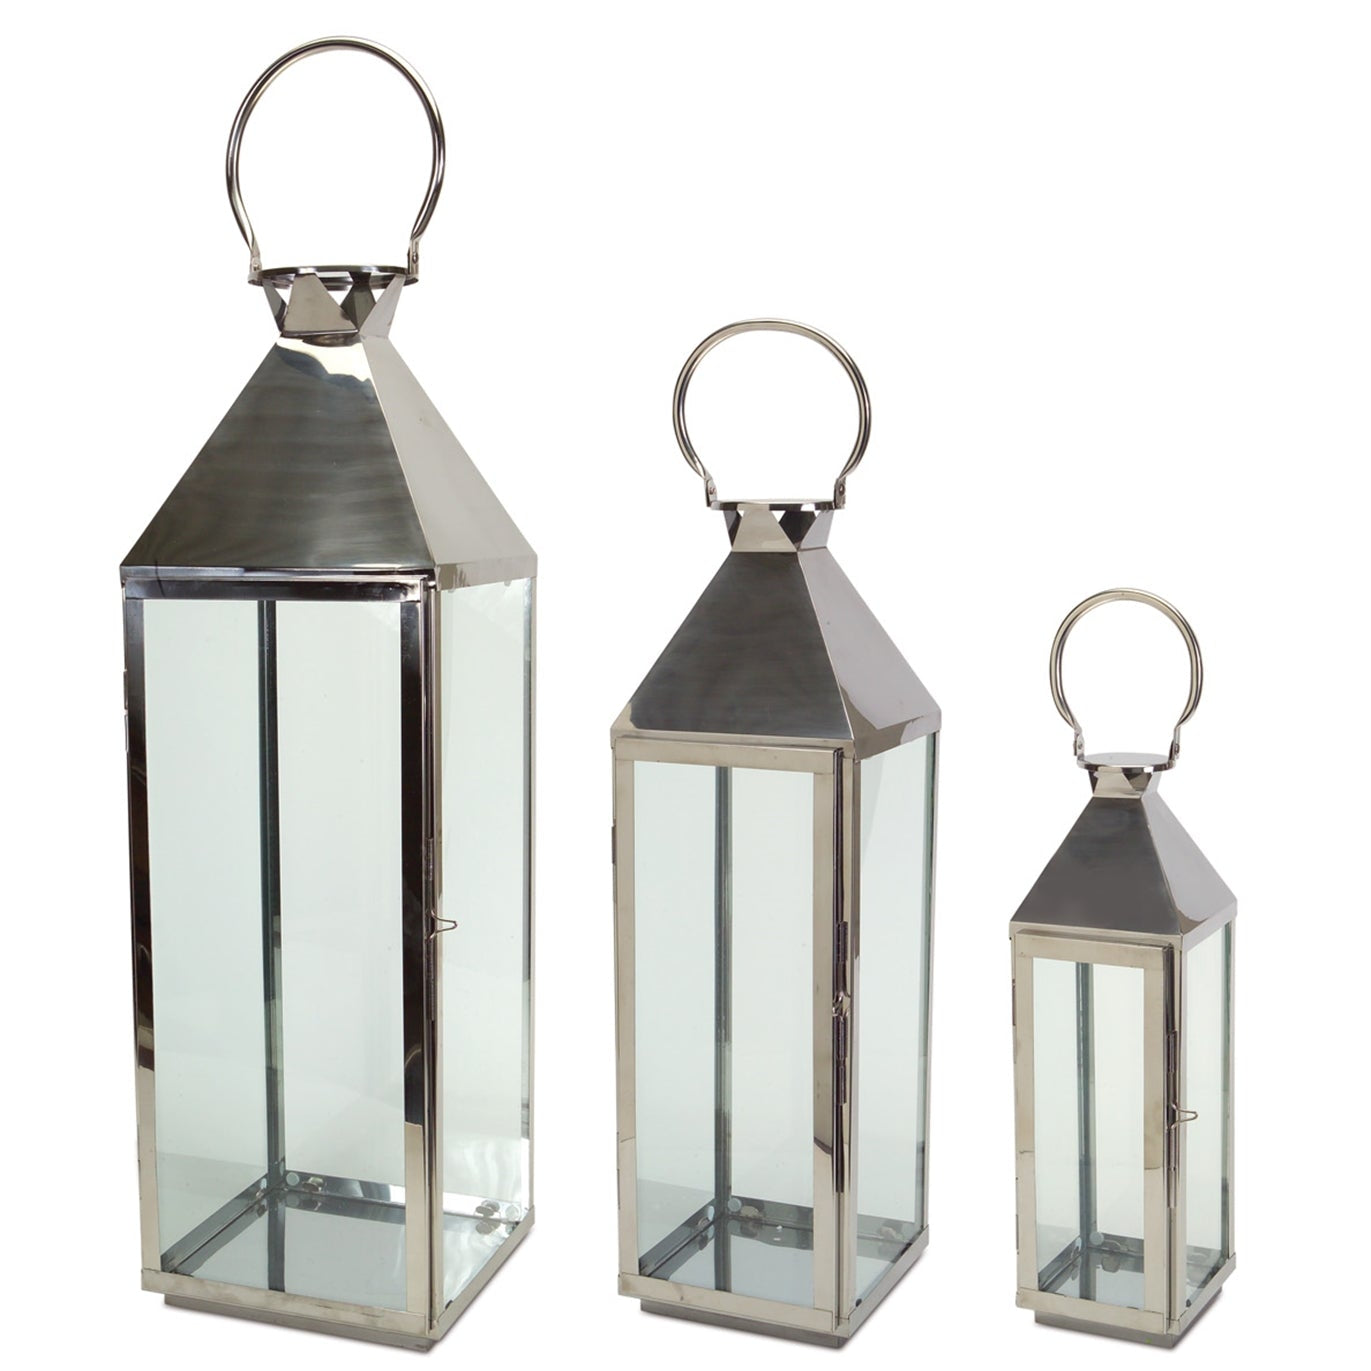 Stainless-Steel-Metal-Lantern,-Set-of-3-Lanterns